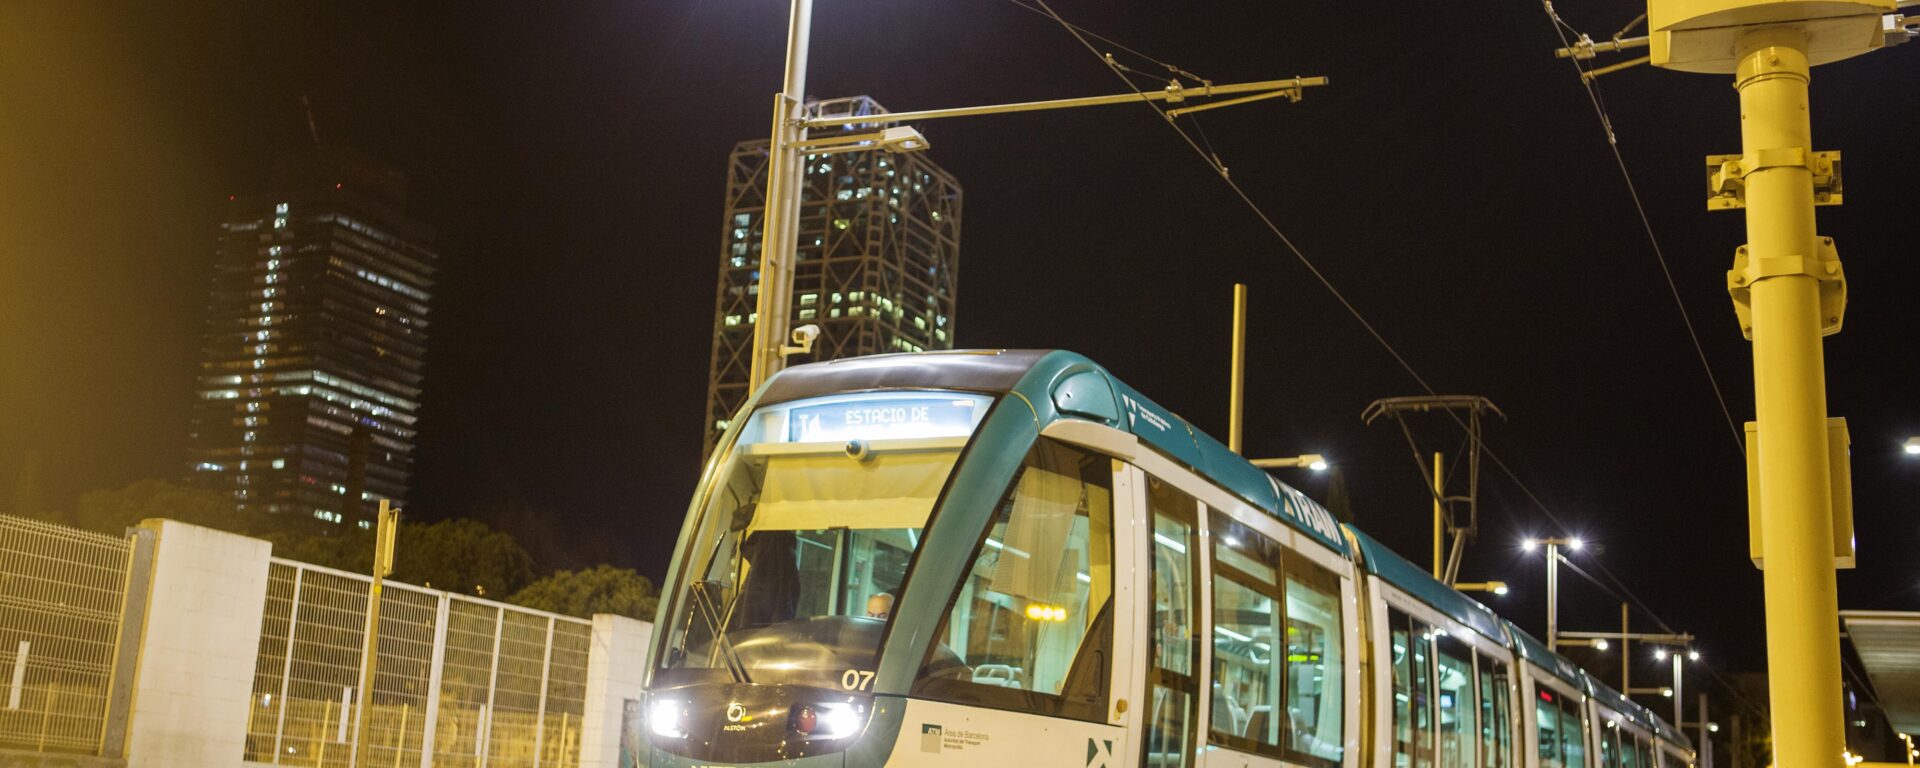 Tramway TRAM Barcelone de nuit